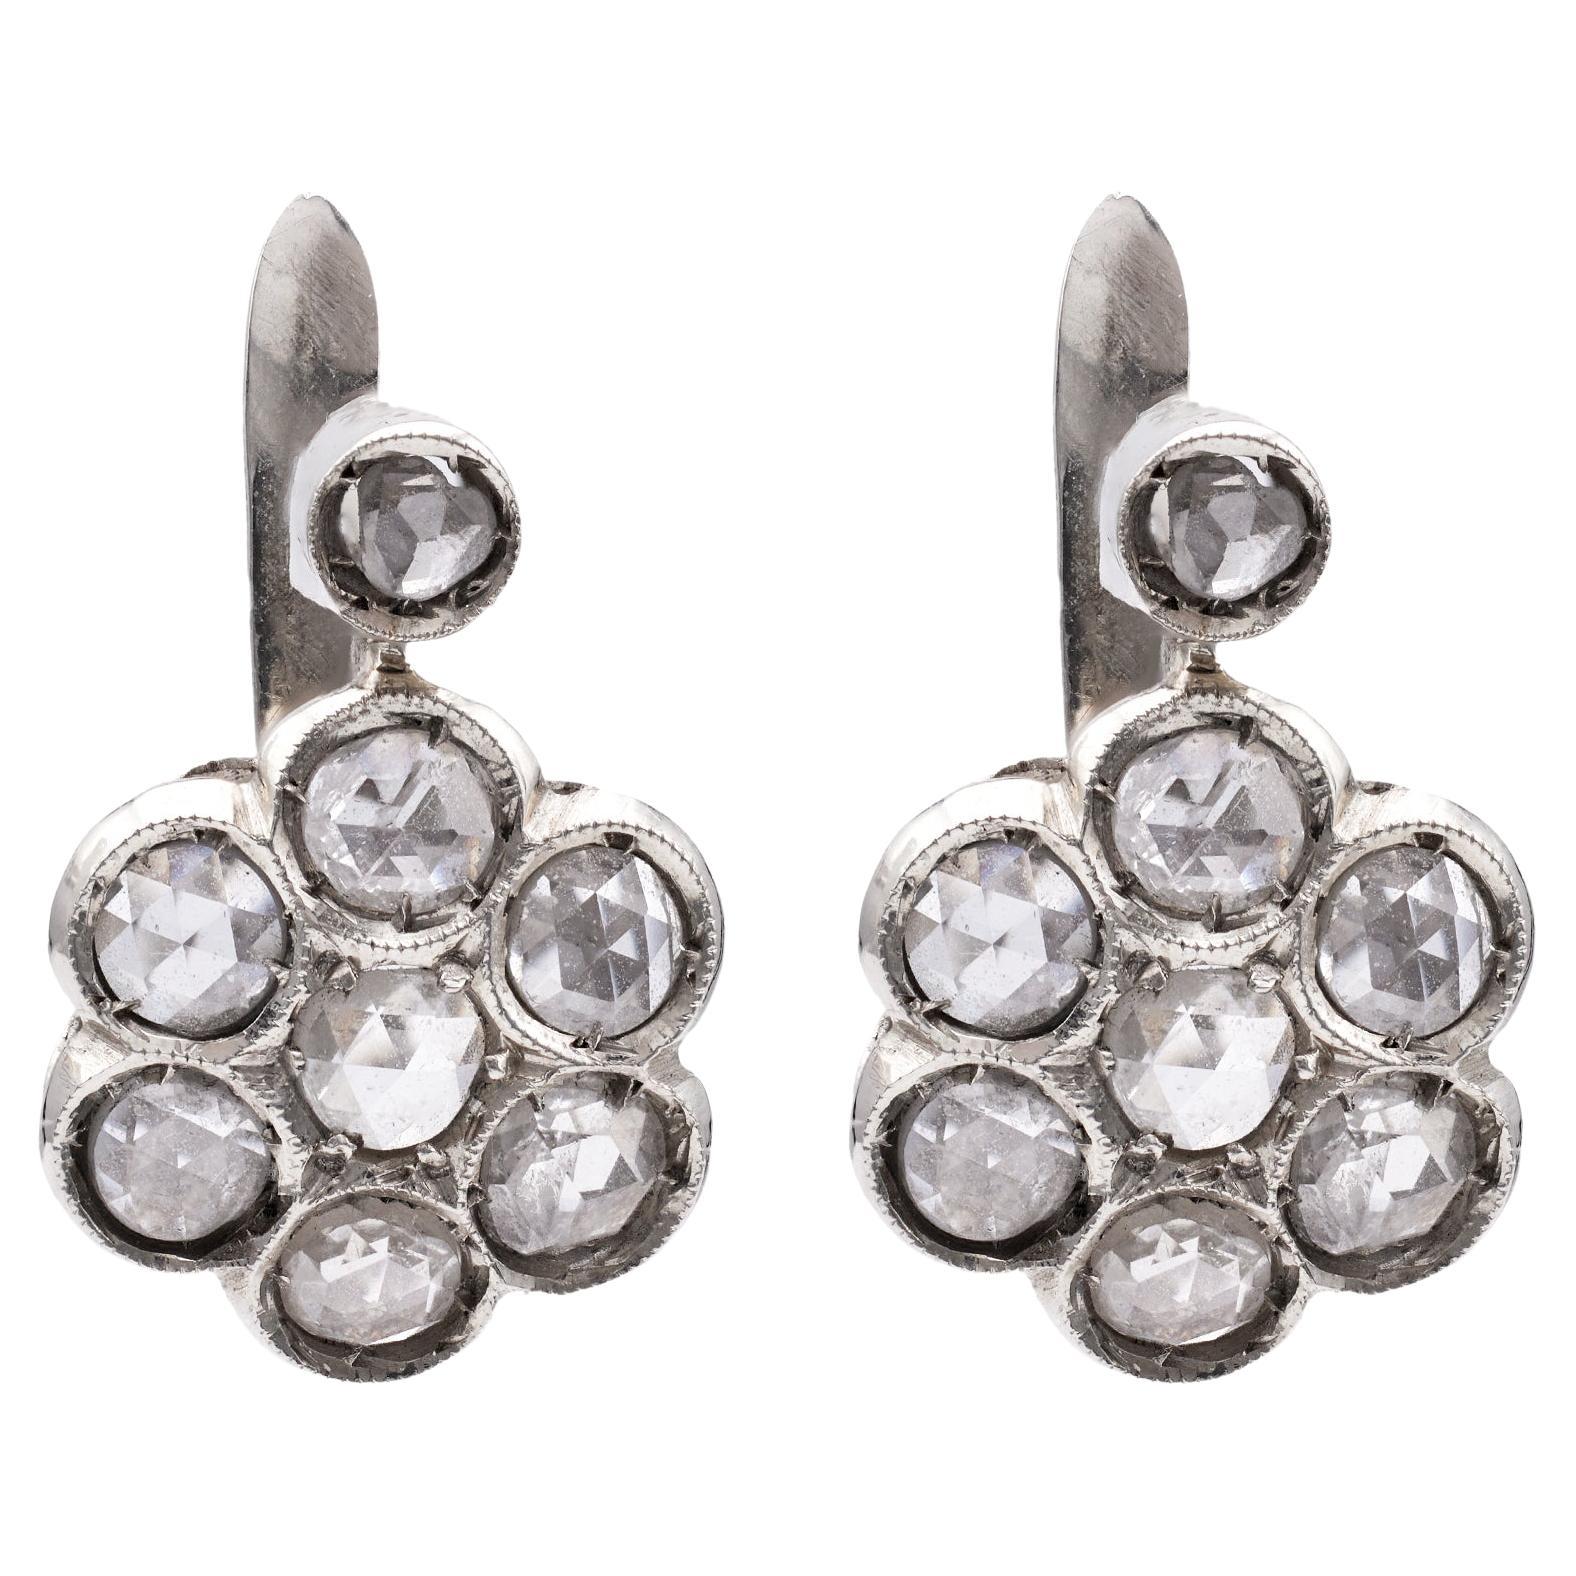 Pair of Retro Rose Cut Diamond 18k White Gold Cluster Earrings